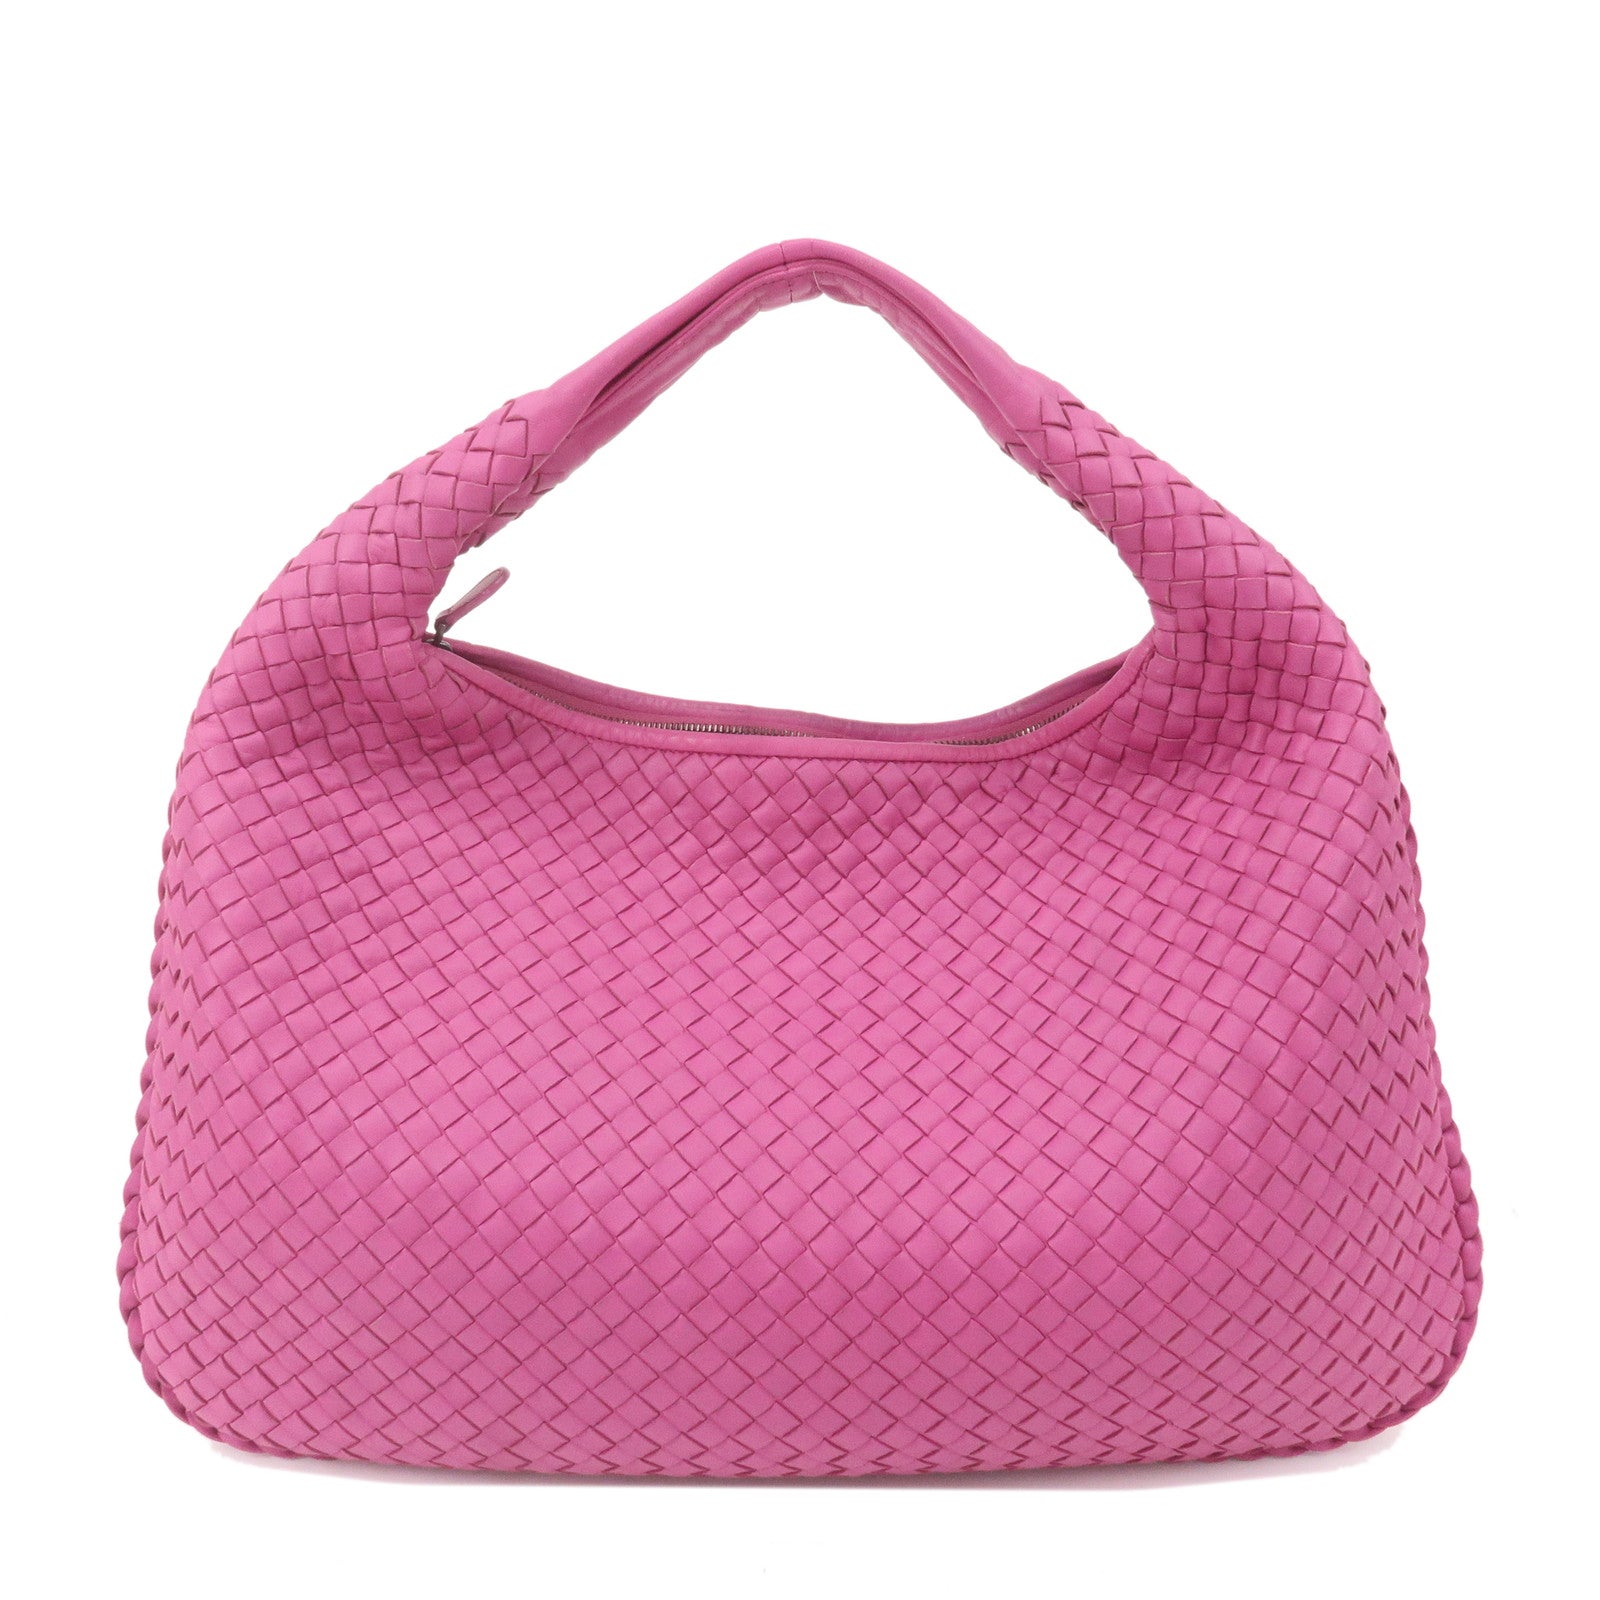 Bottega Veneta Intrecciato Hobo Handbag Pink